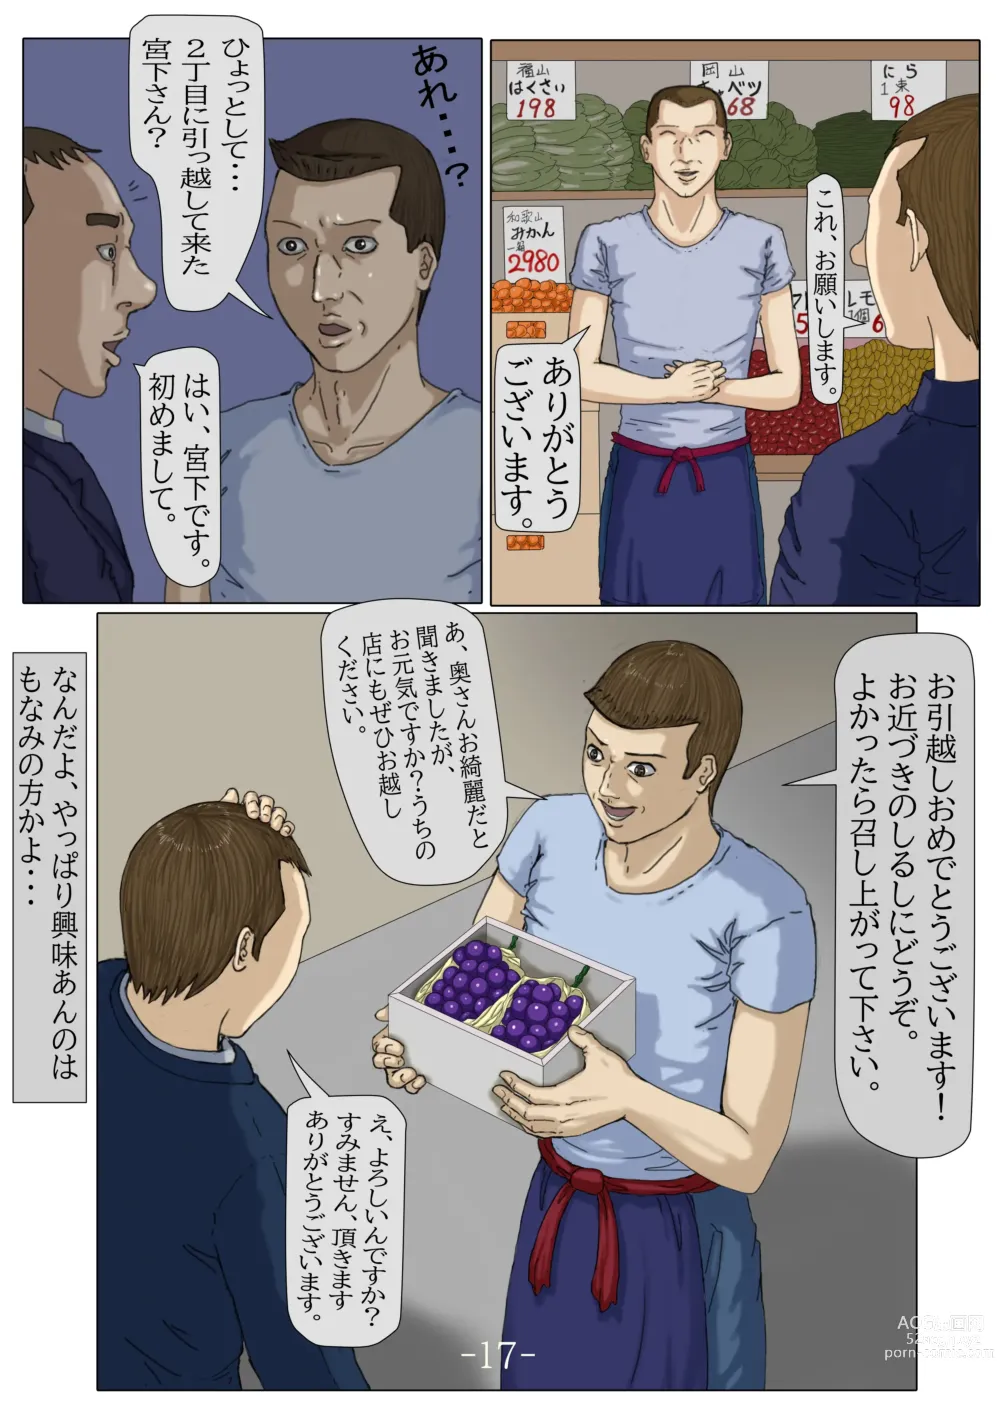 Page 18 of doujinshi Ninshinshitai mesu Haramasettai osu